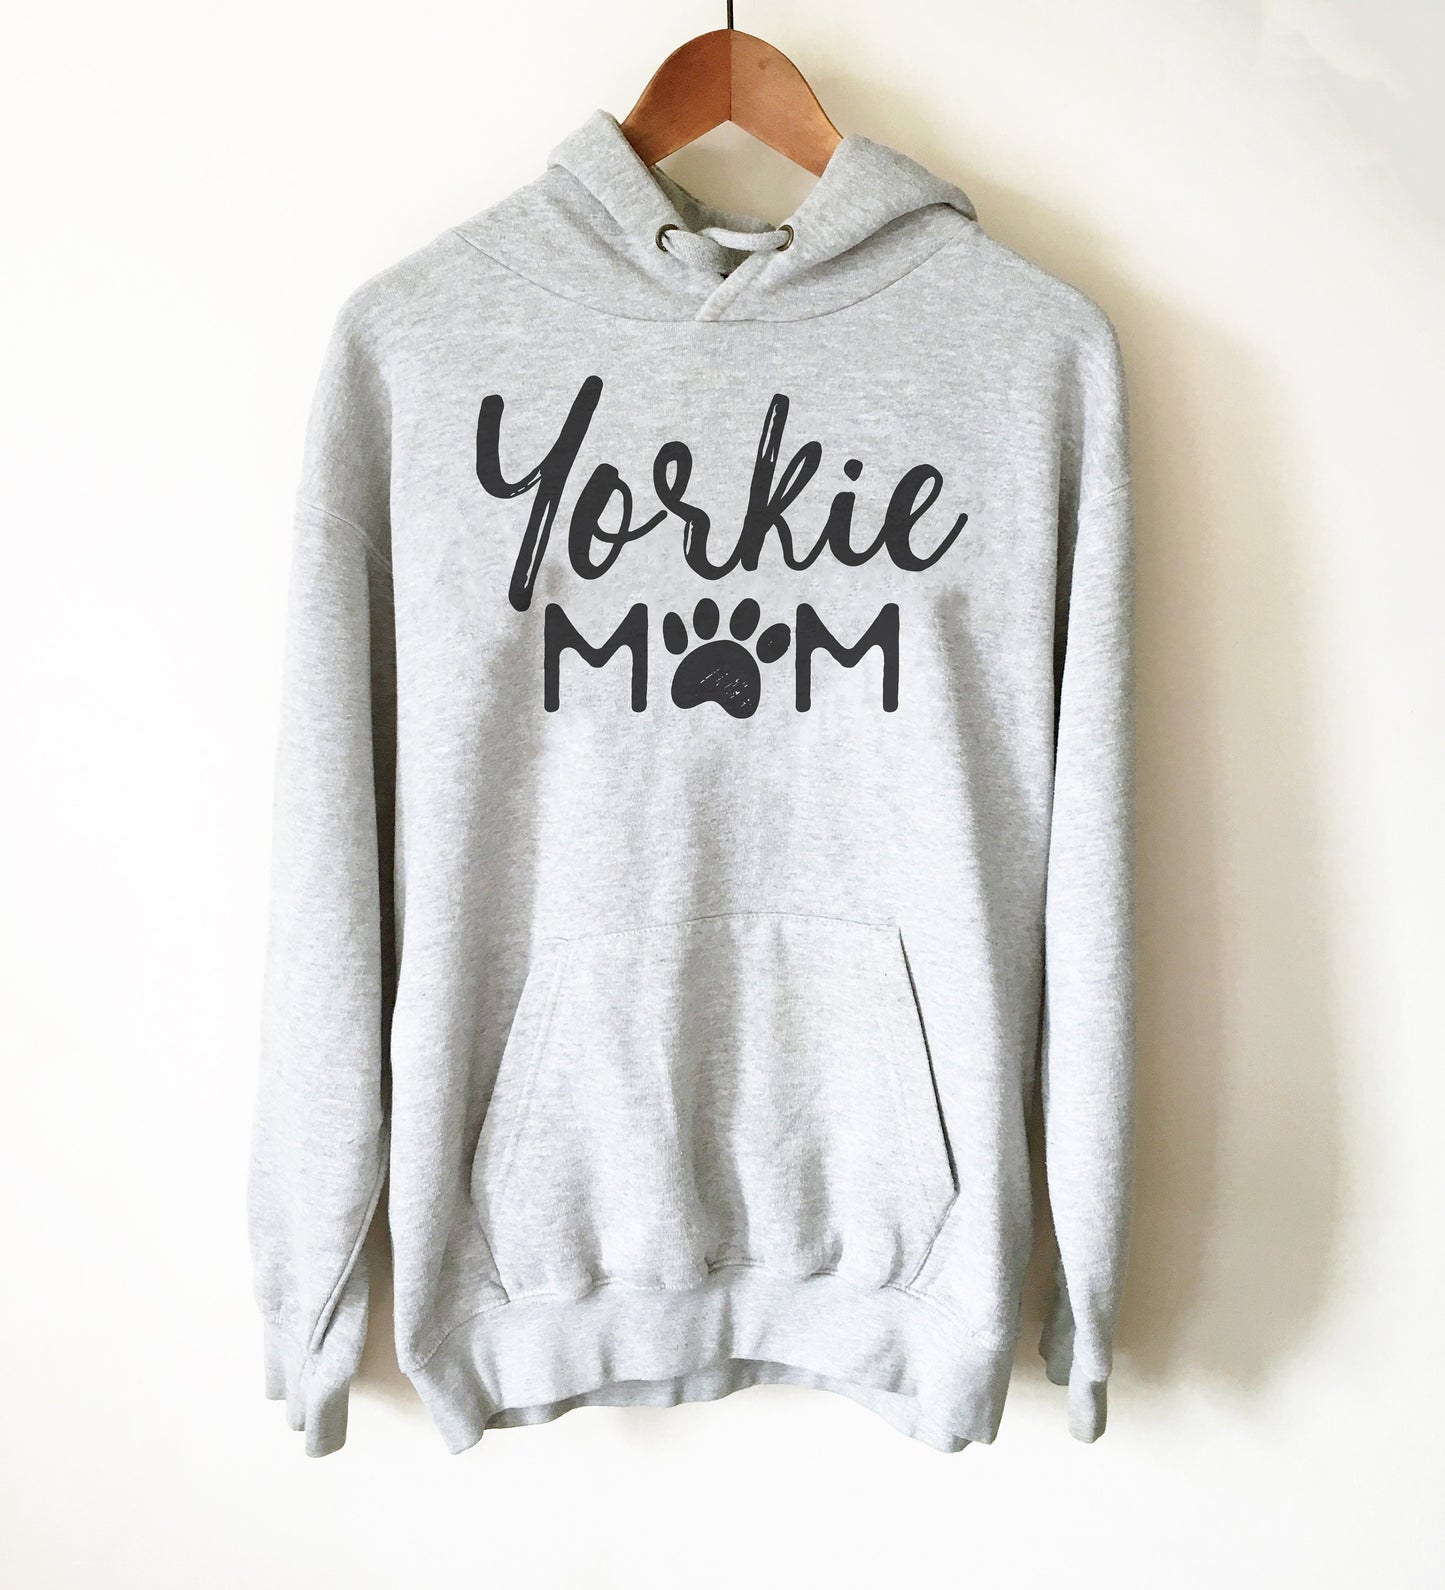 Yorkie Mom Hoodie - Yorkie Shirt, Yorkie Gifts, Yorkie Print, Yorkshire Terrier Gift, Yorkshire Terrier Shirt, Yorkie Owner